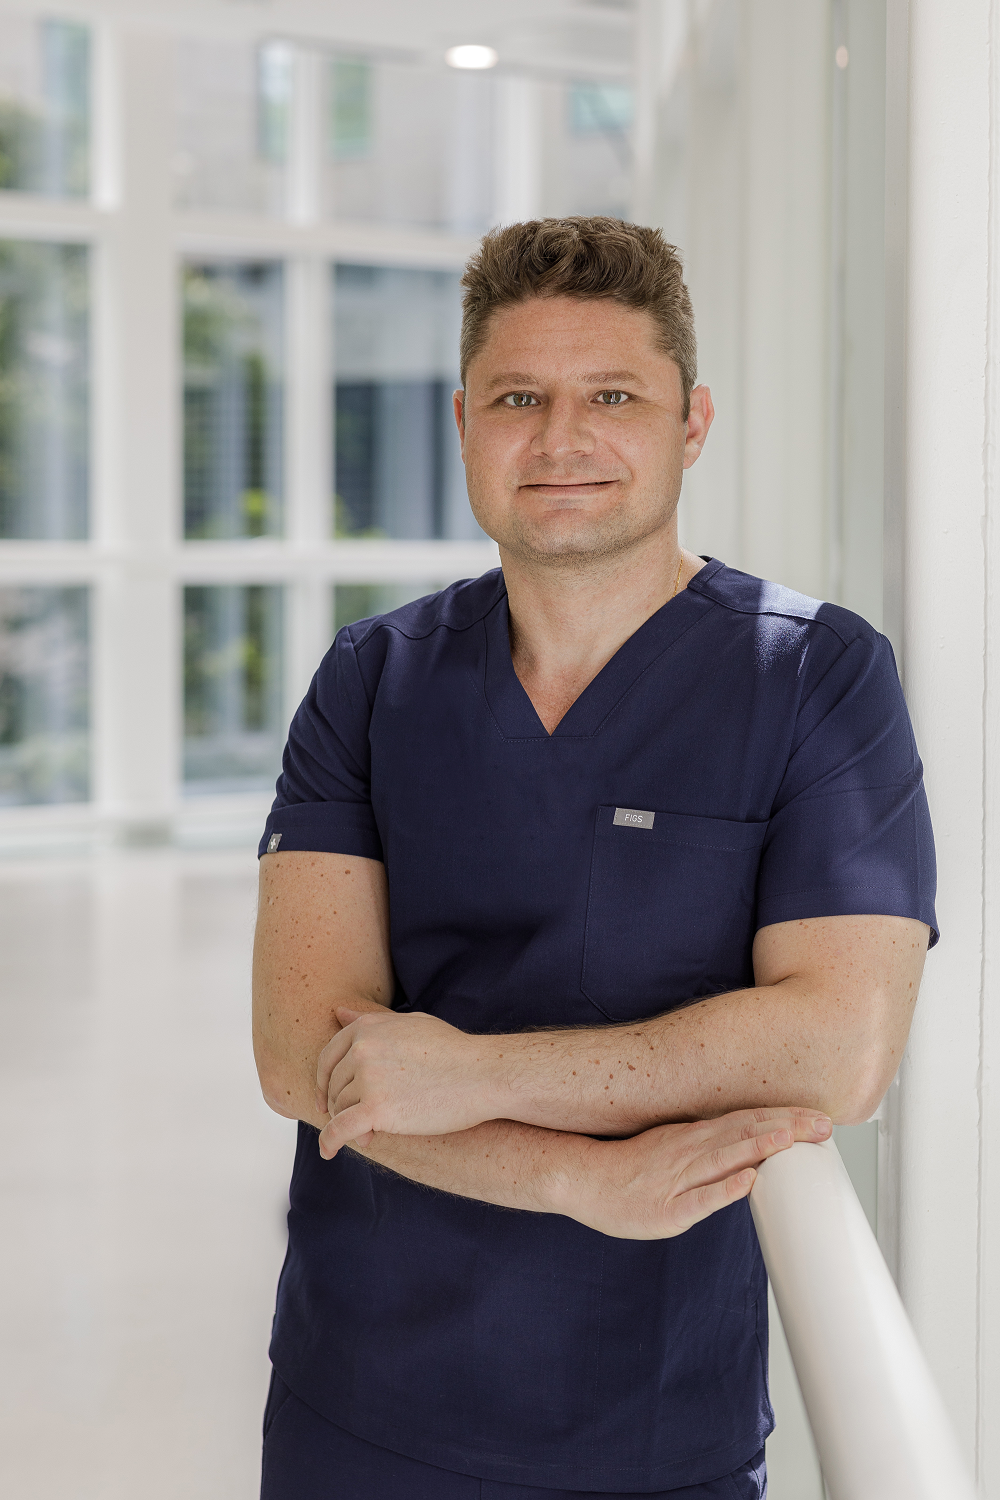 Dr. André Berger, do Hospital Moinhos de Vento. Ele aborda as novas terapias e tecnologias que estão mudando o tratamento da doença.